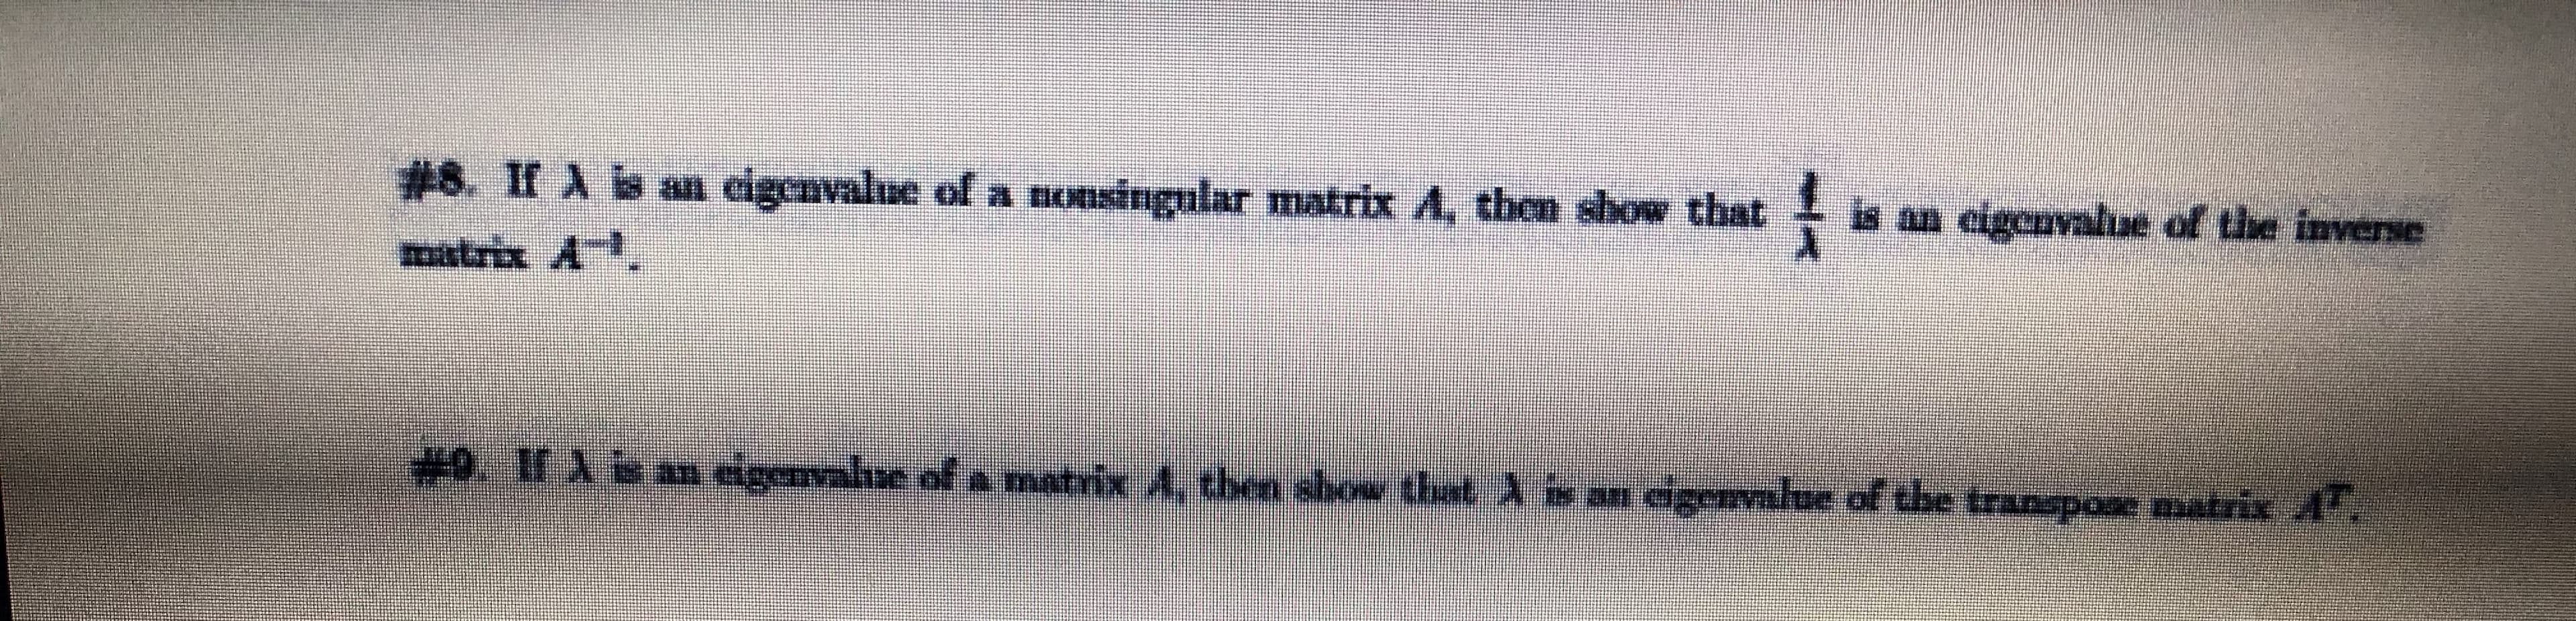 #8. If A b an cigenvalue of a nonsingular matrix A, then show that
ఇధా A .
is an eigenvalue of the inverse
+9.11 Xb an eigenvalse of a matrix A, tben show that an dgenalue of the transpose matrix A
